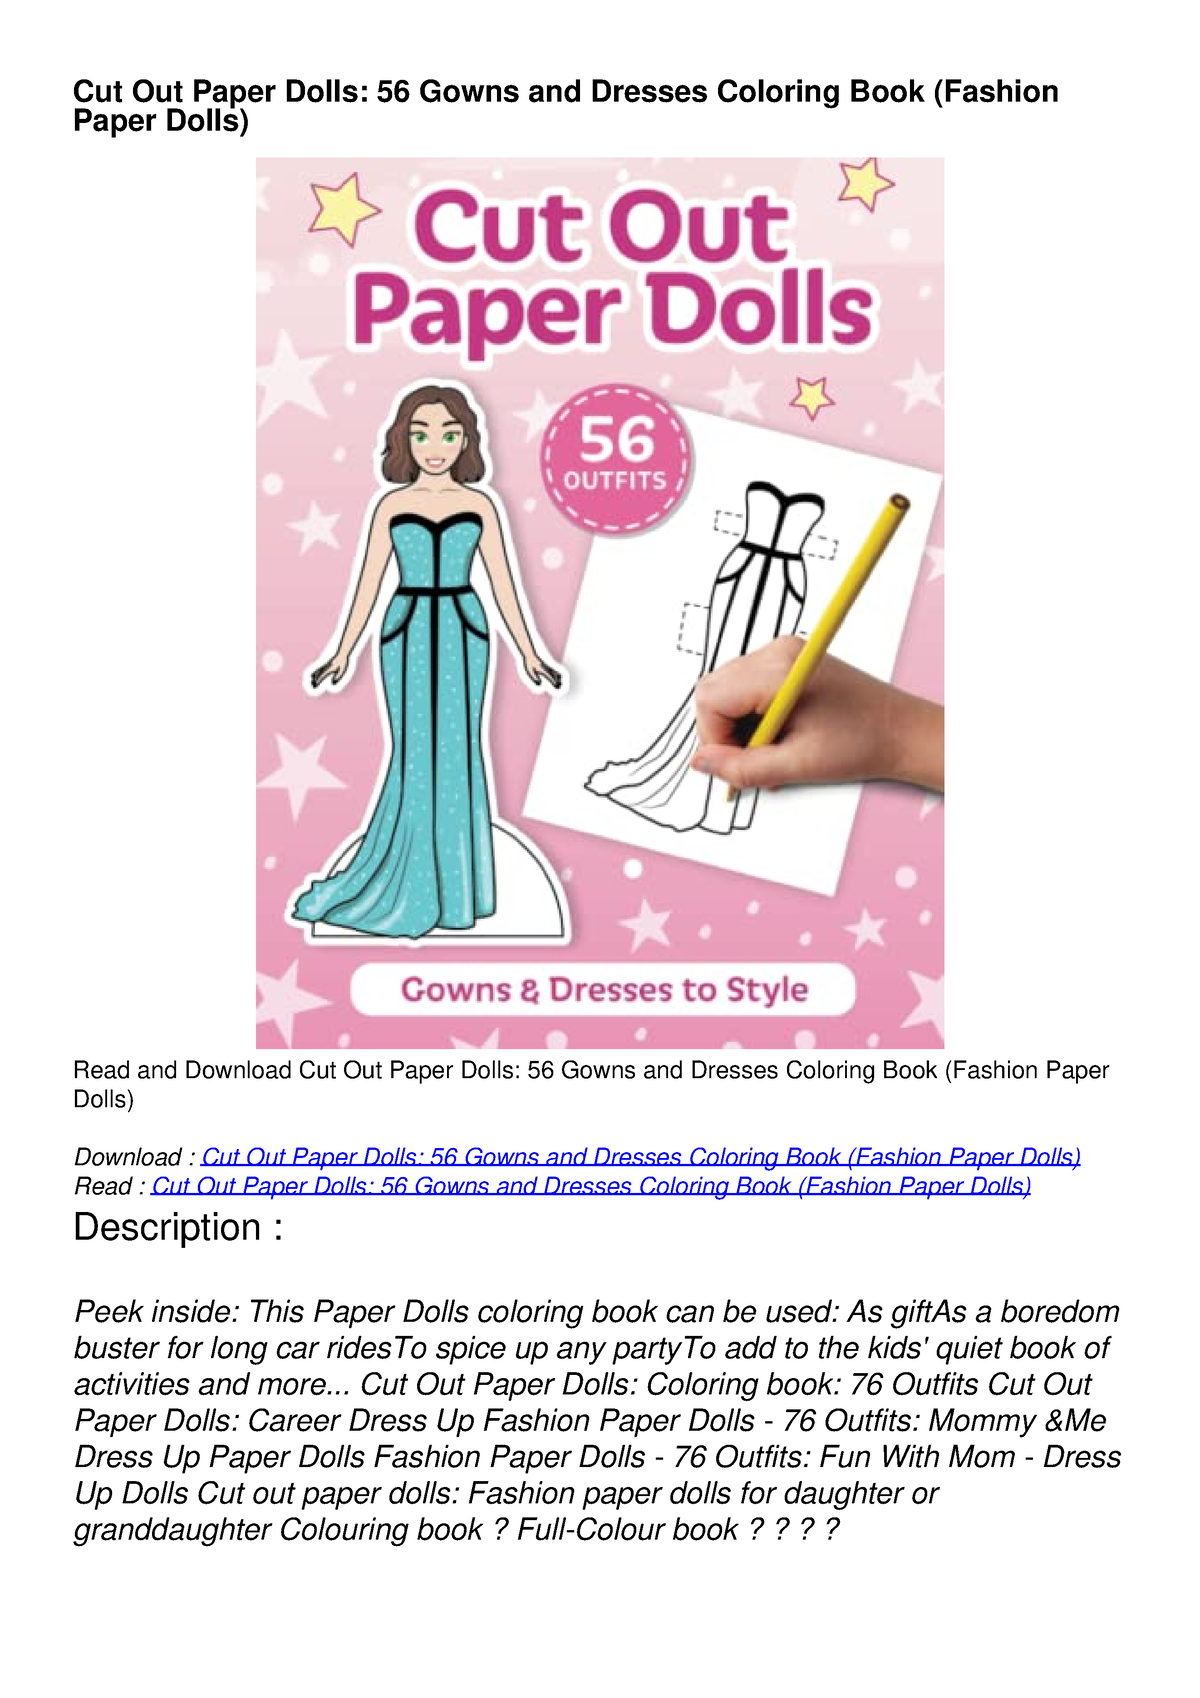 Cut out paper dolls: Best friends (Fashion Paper Dolls)